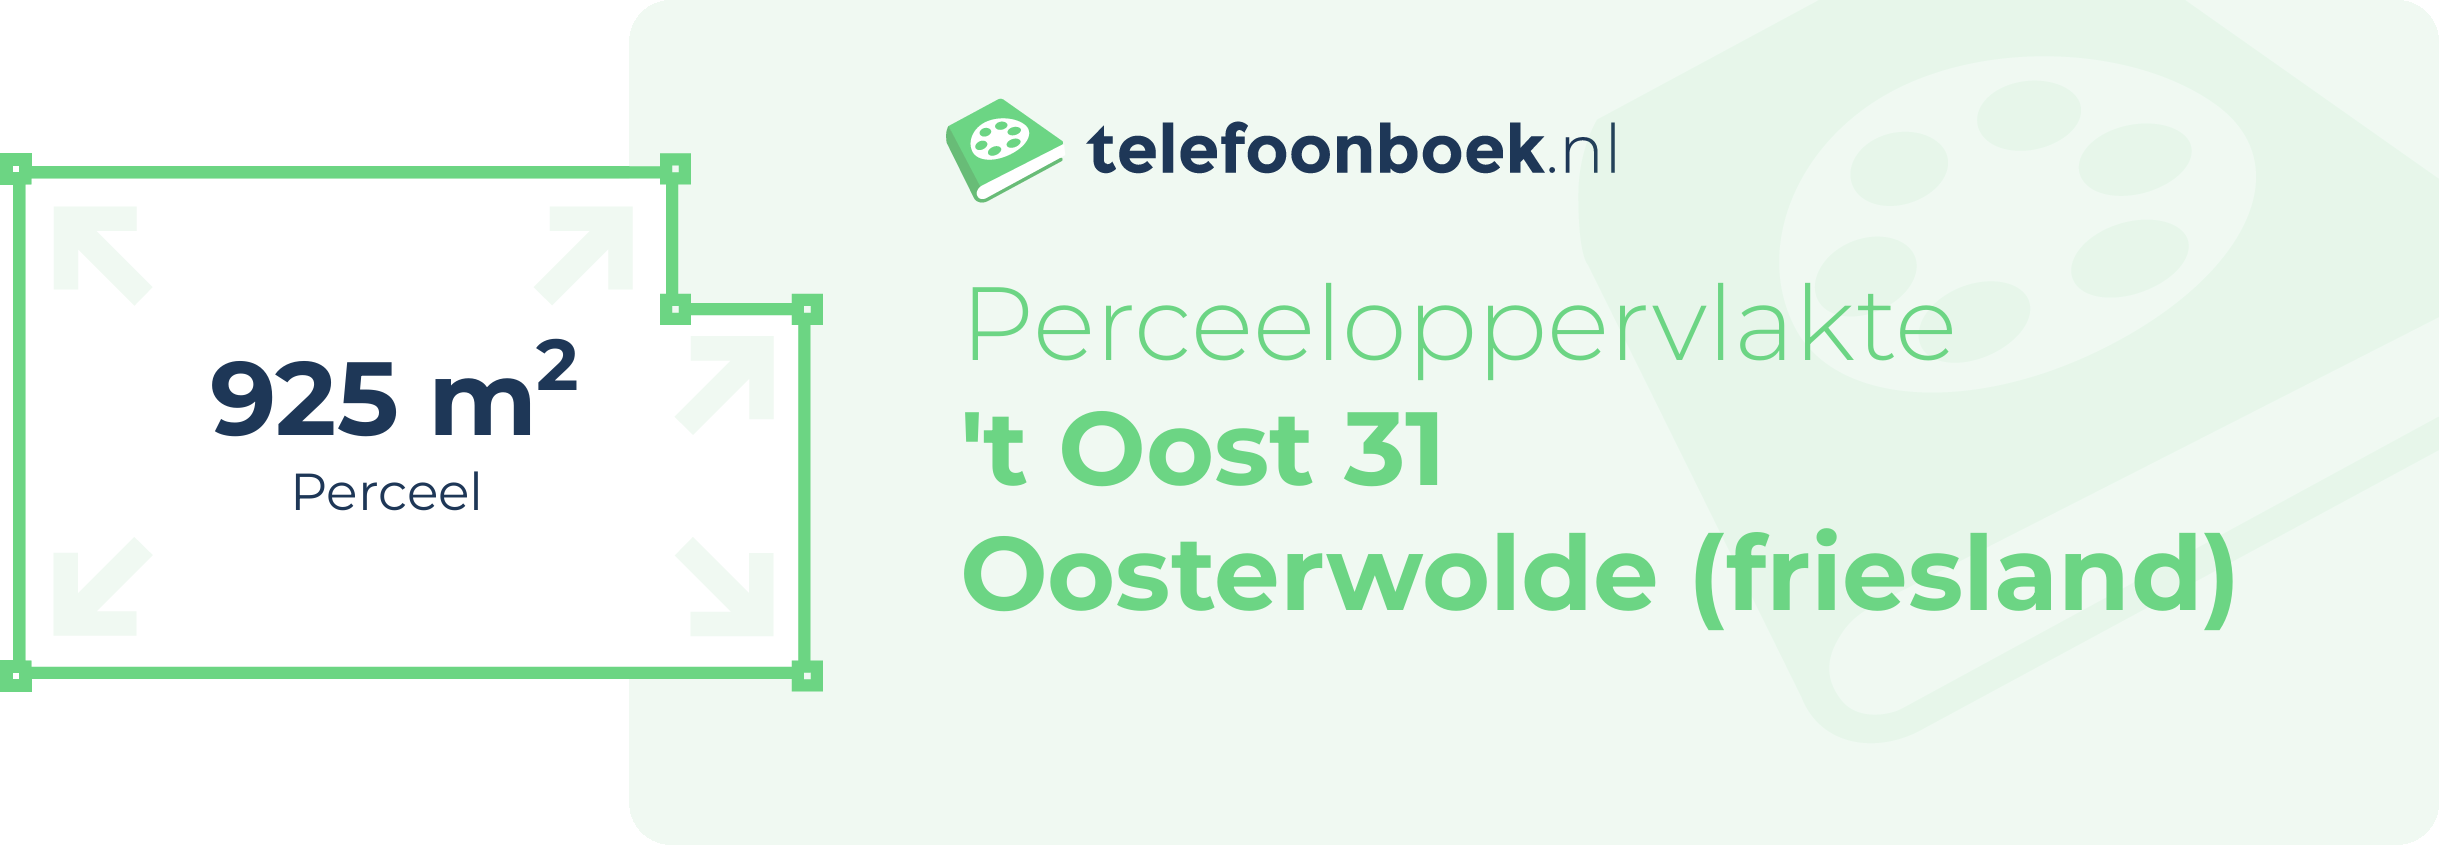 Perceeloppervlakte 't Oost 31 Oosterwolde (Friesland)